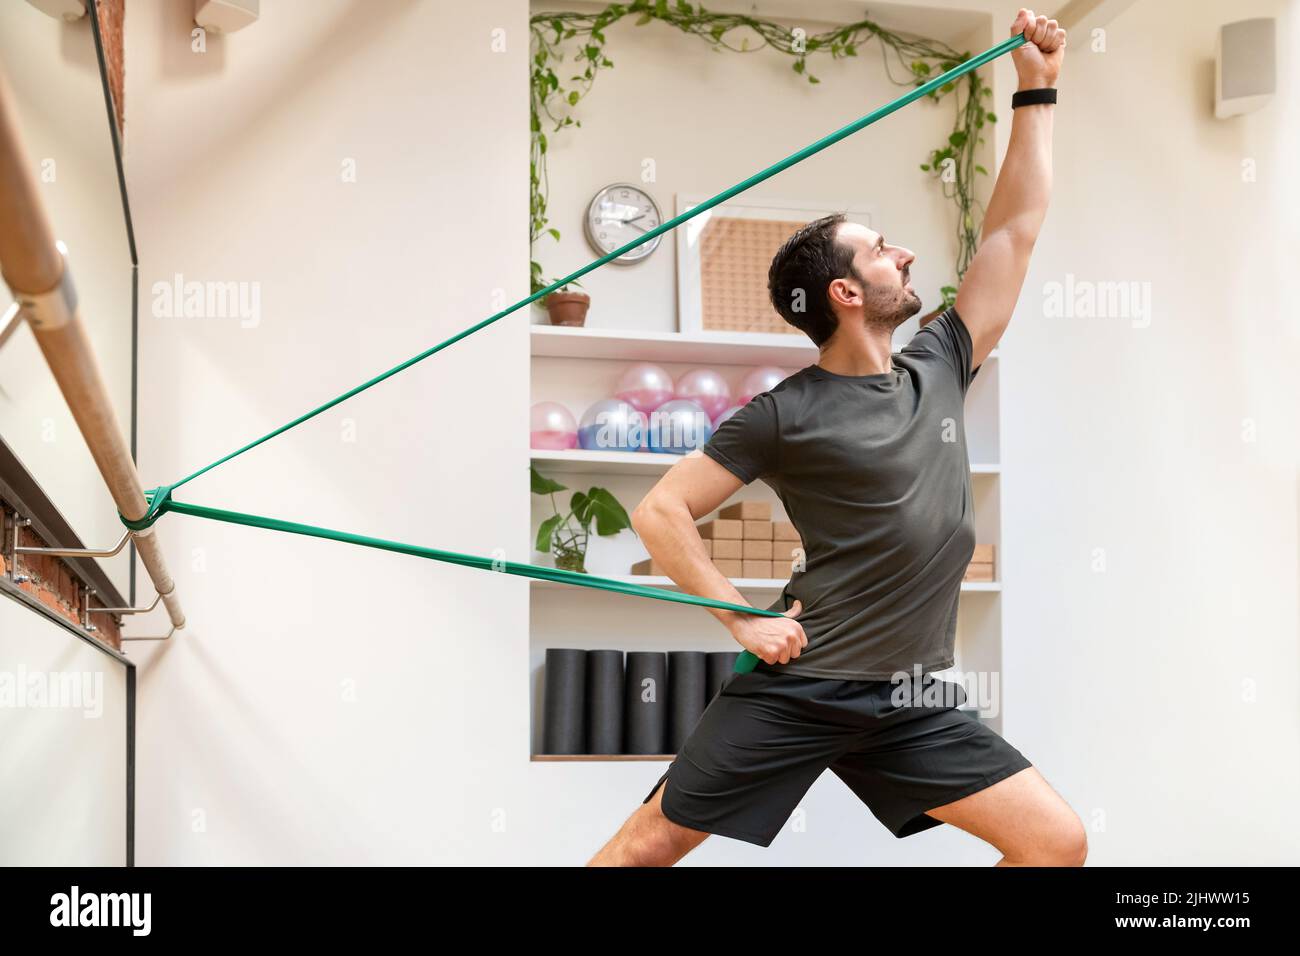 Vista lateral de deportivo de hombre fuerte en ropa activa haciendo ejercicio con bandas de resistencia durante el entrenamiento intenso en gimnasio moderno ligero Foto de stock